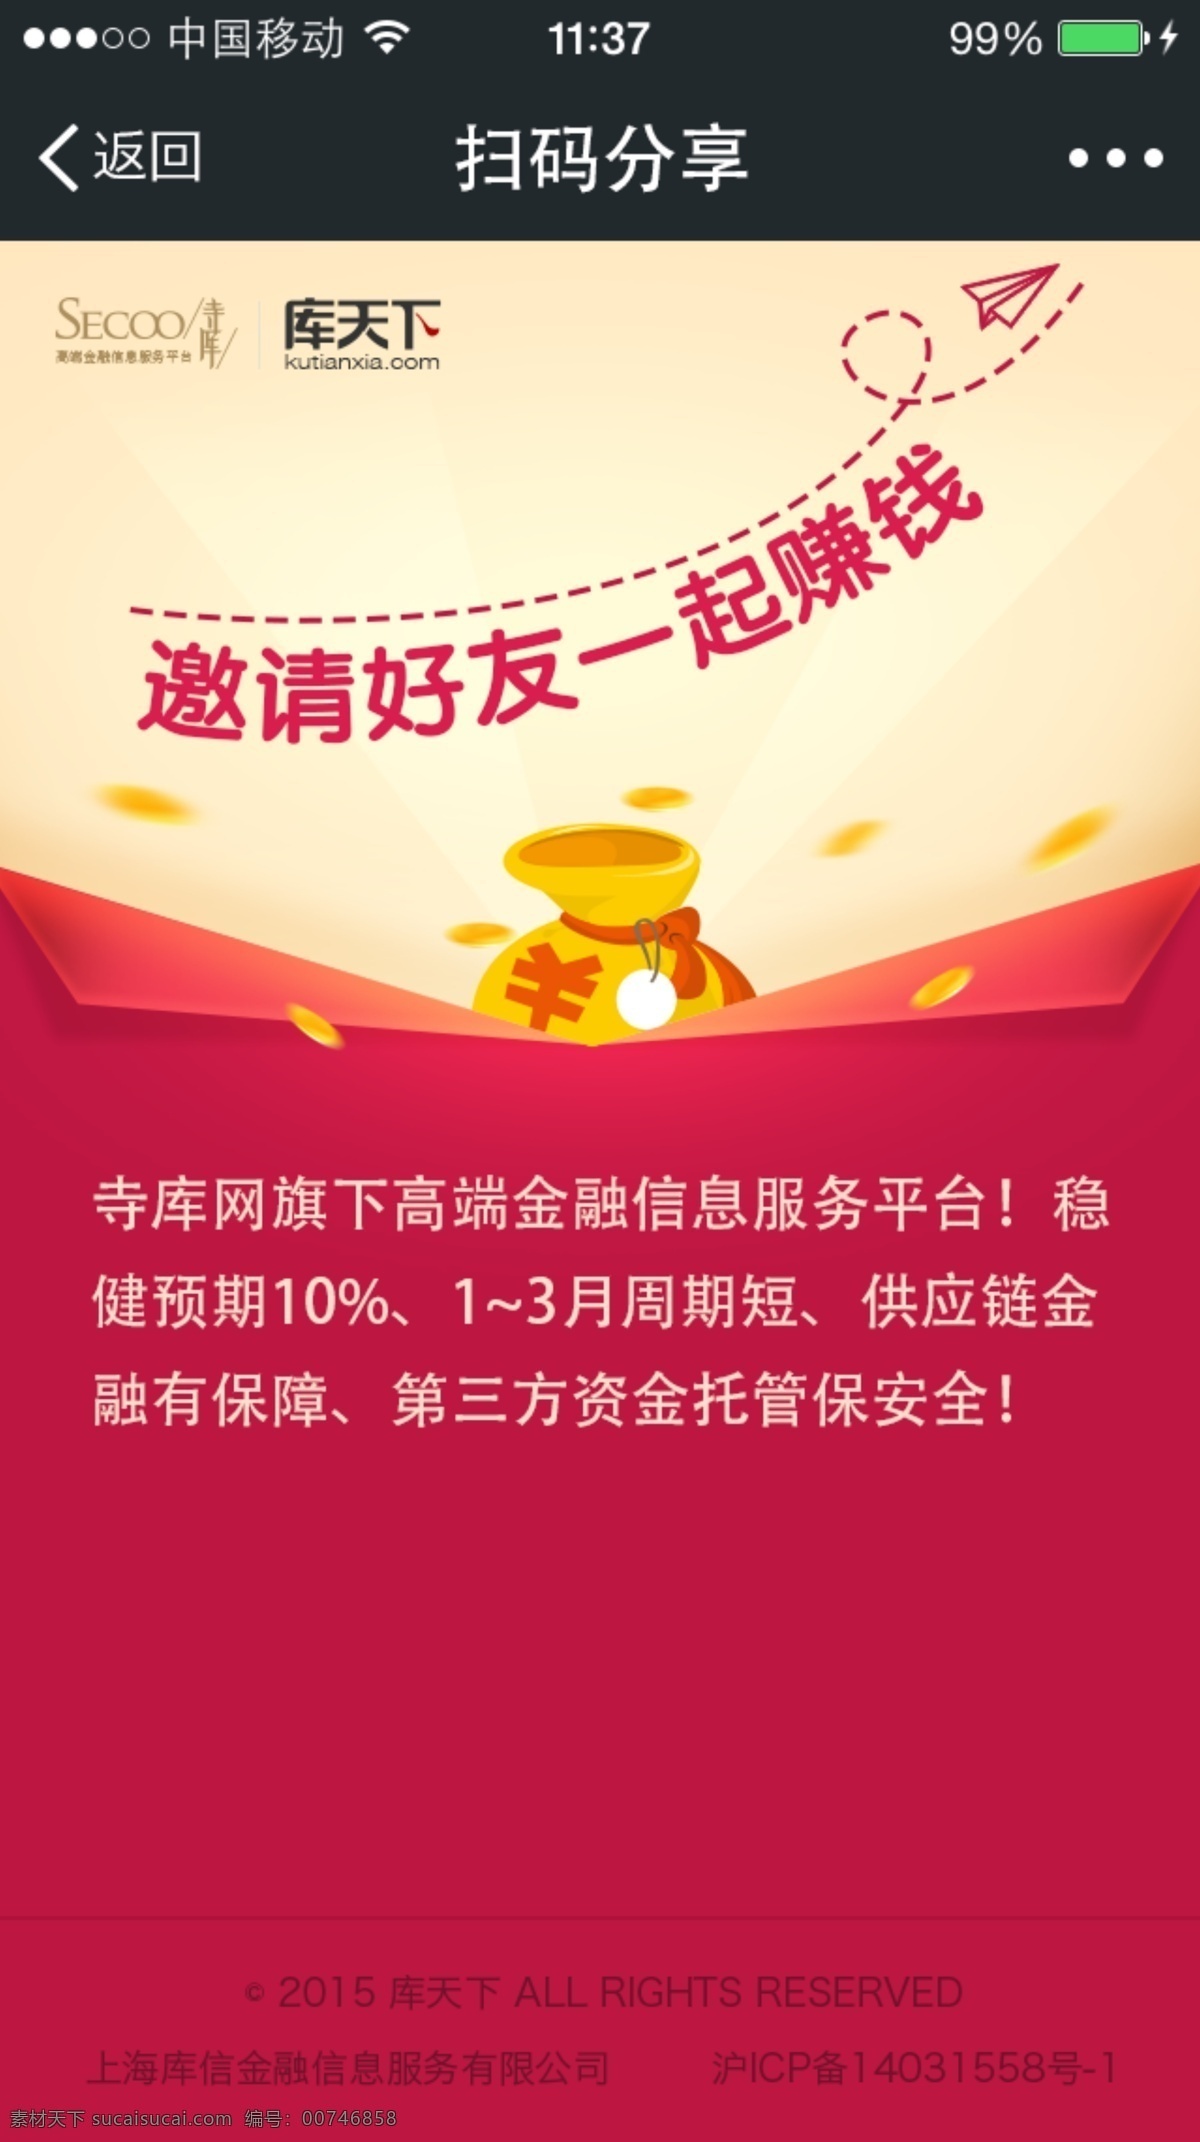 微信分享活动 微信分享 活动设计下载 分享 红色 黄色 微信 赚钱